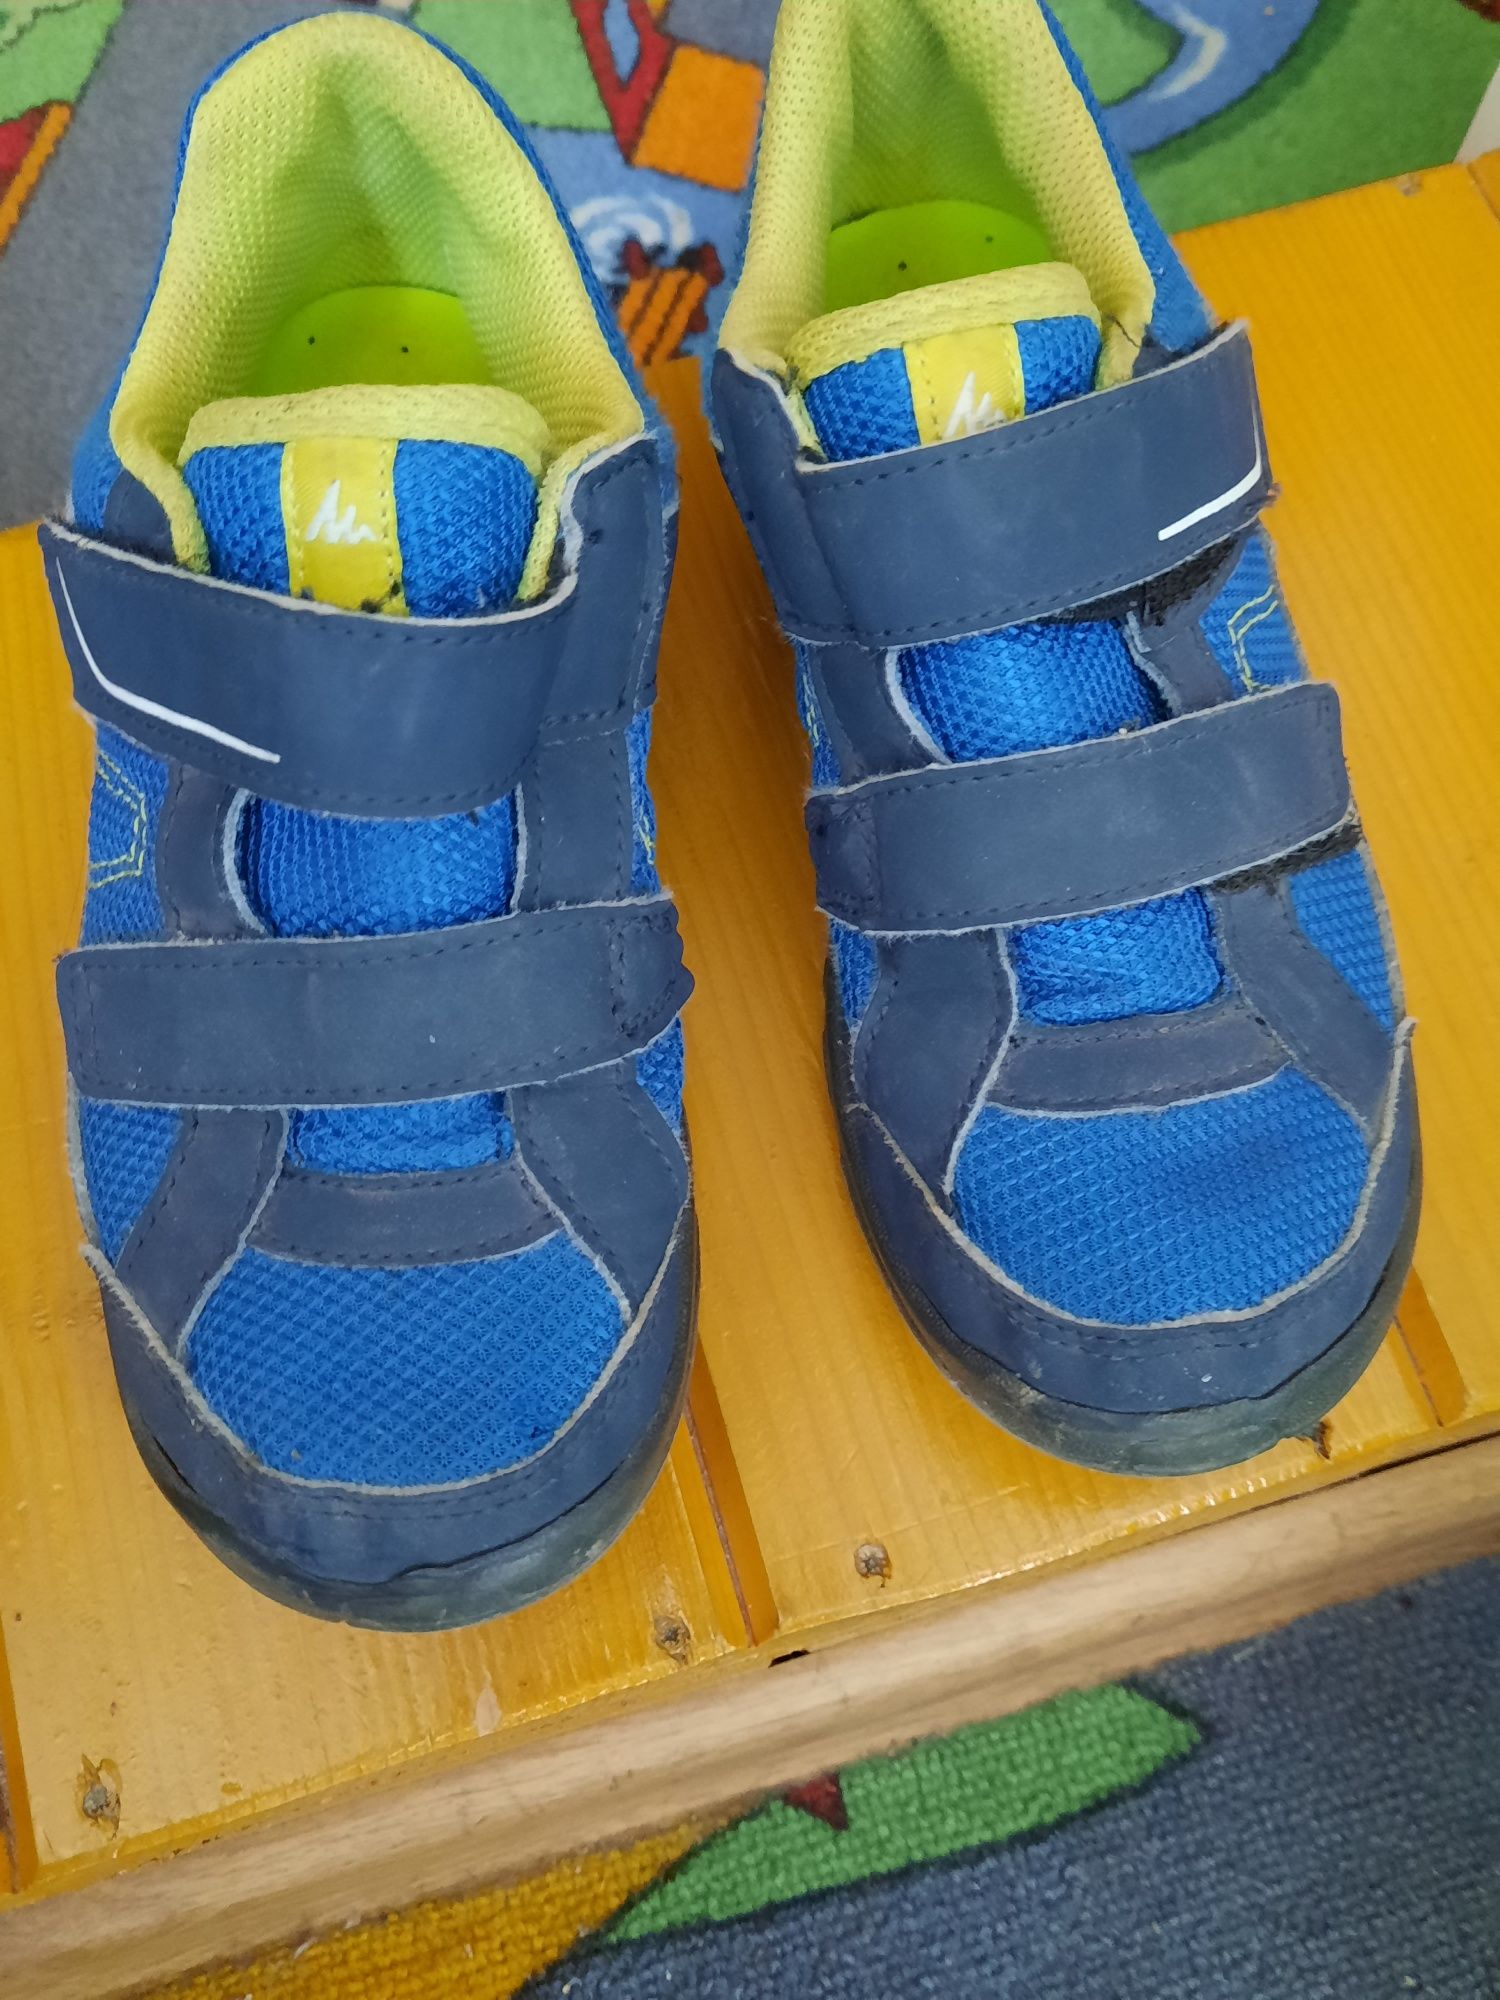 Papuci copii, adidasi marime 32, Decathlon, Quechua